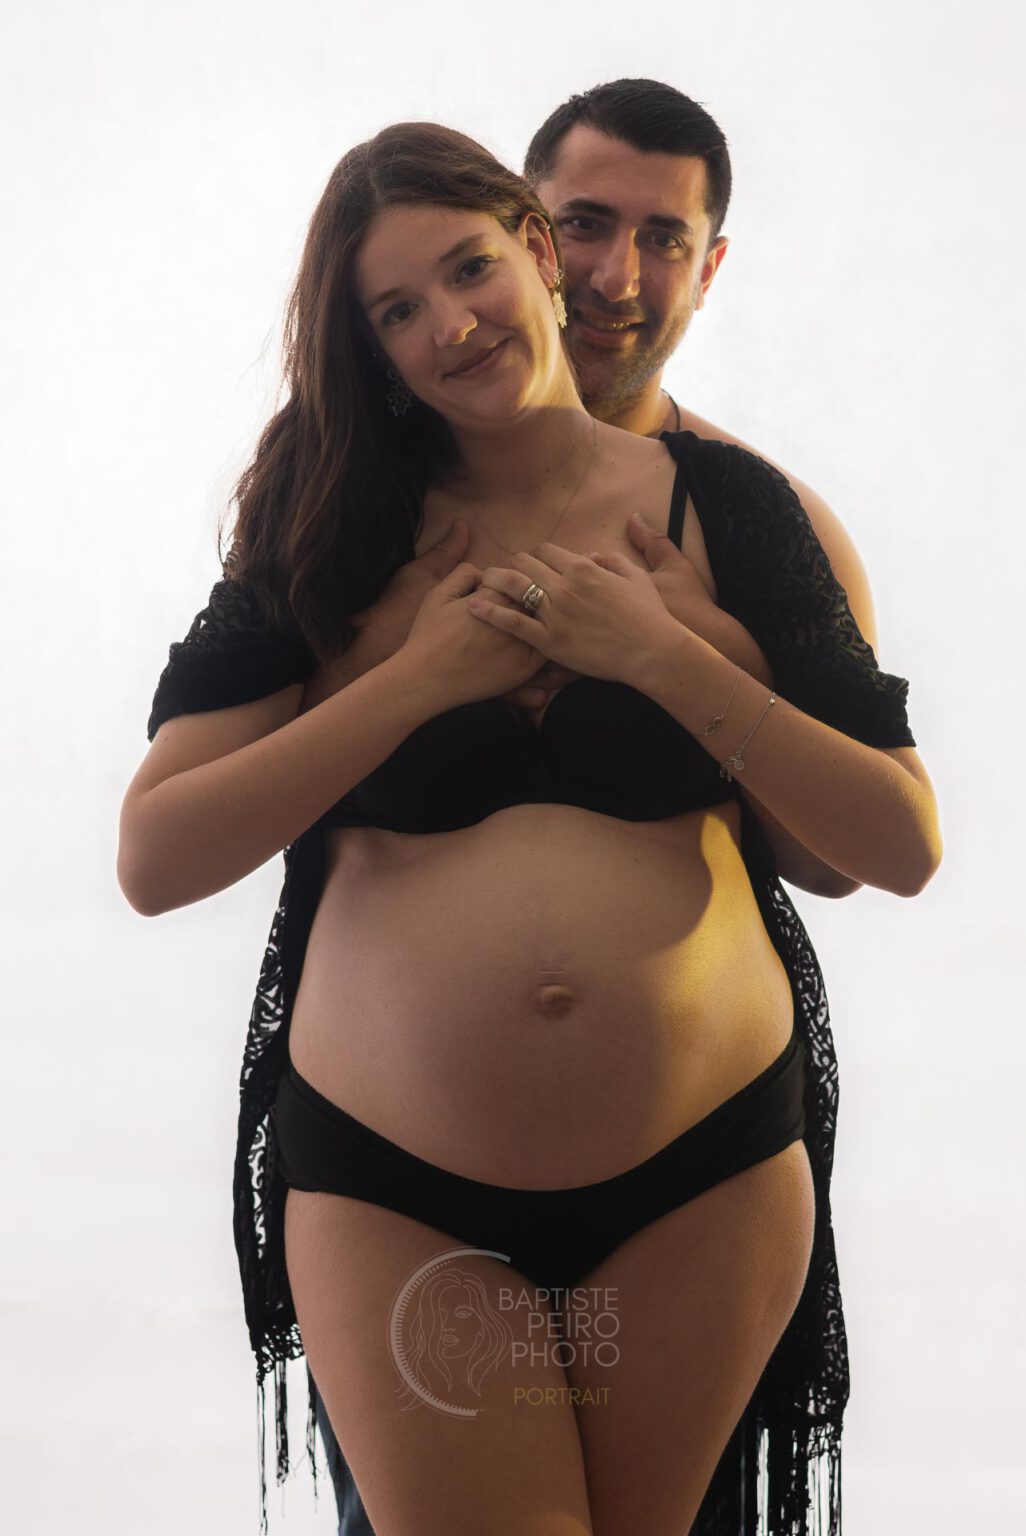 Soraya. Retrato de una bella mujer embarazada por peirophoto